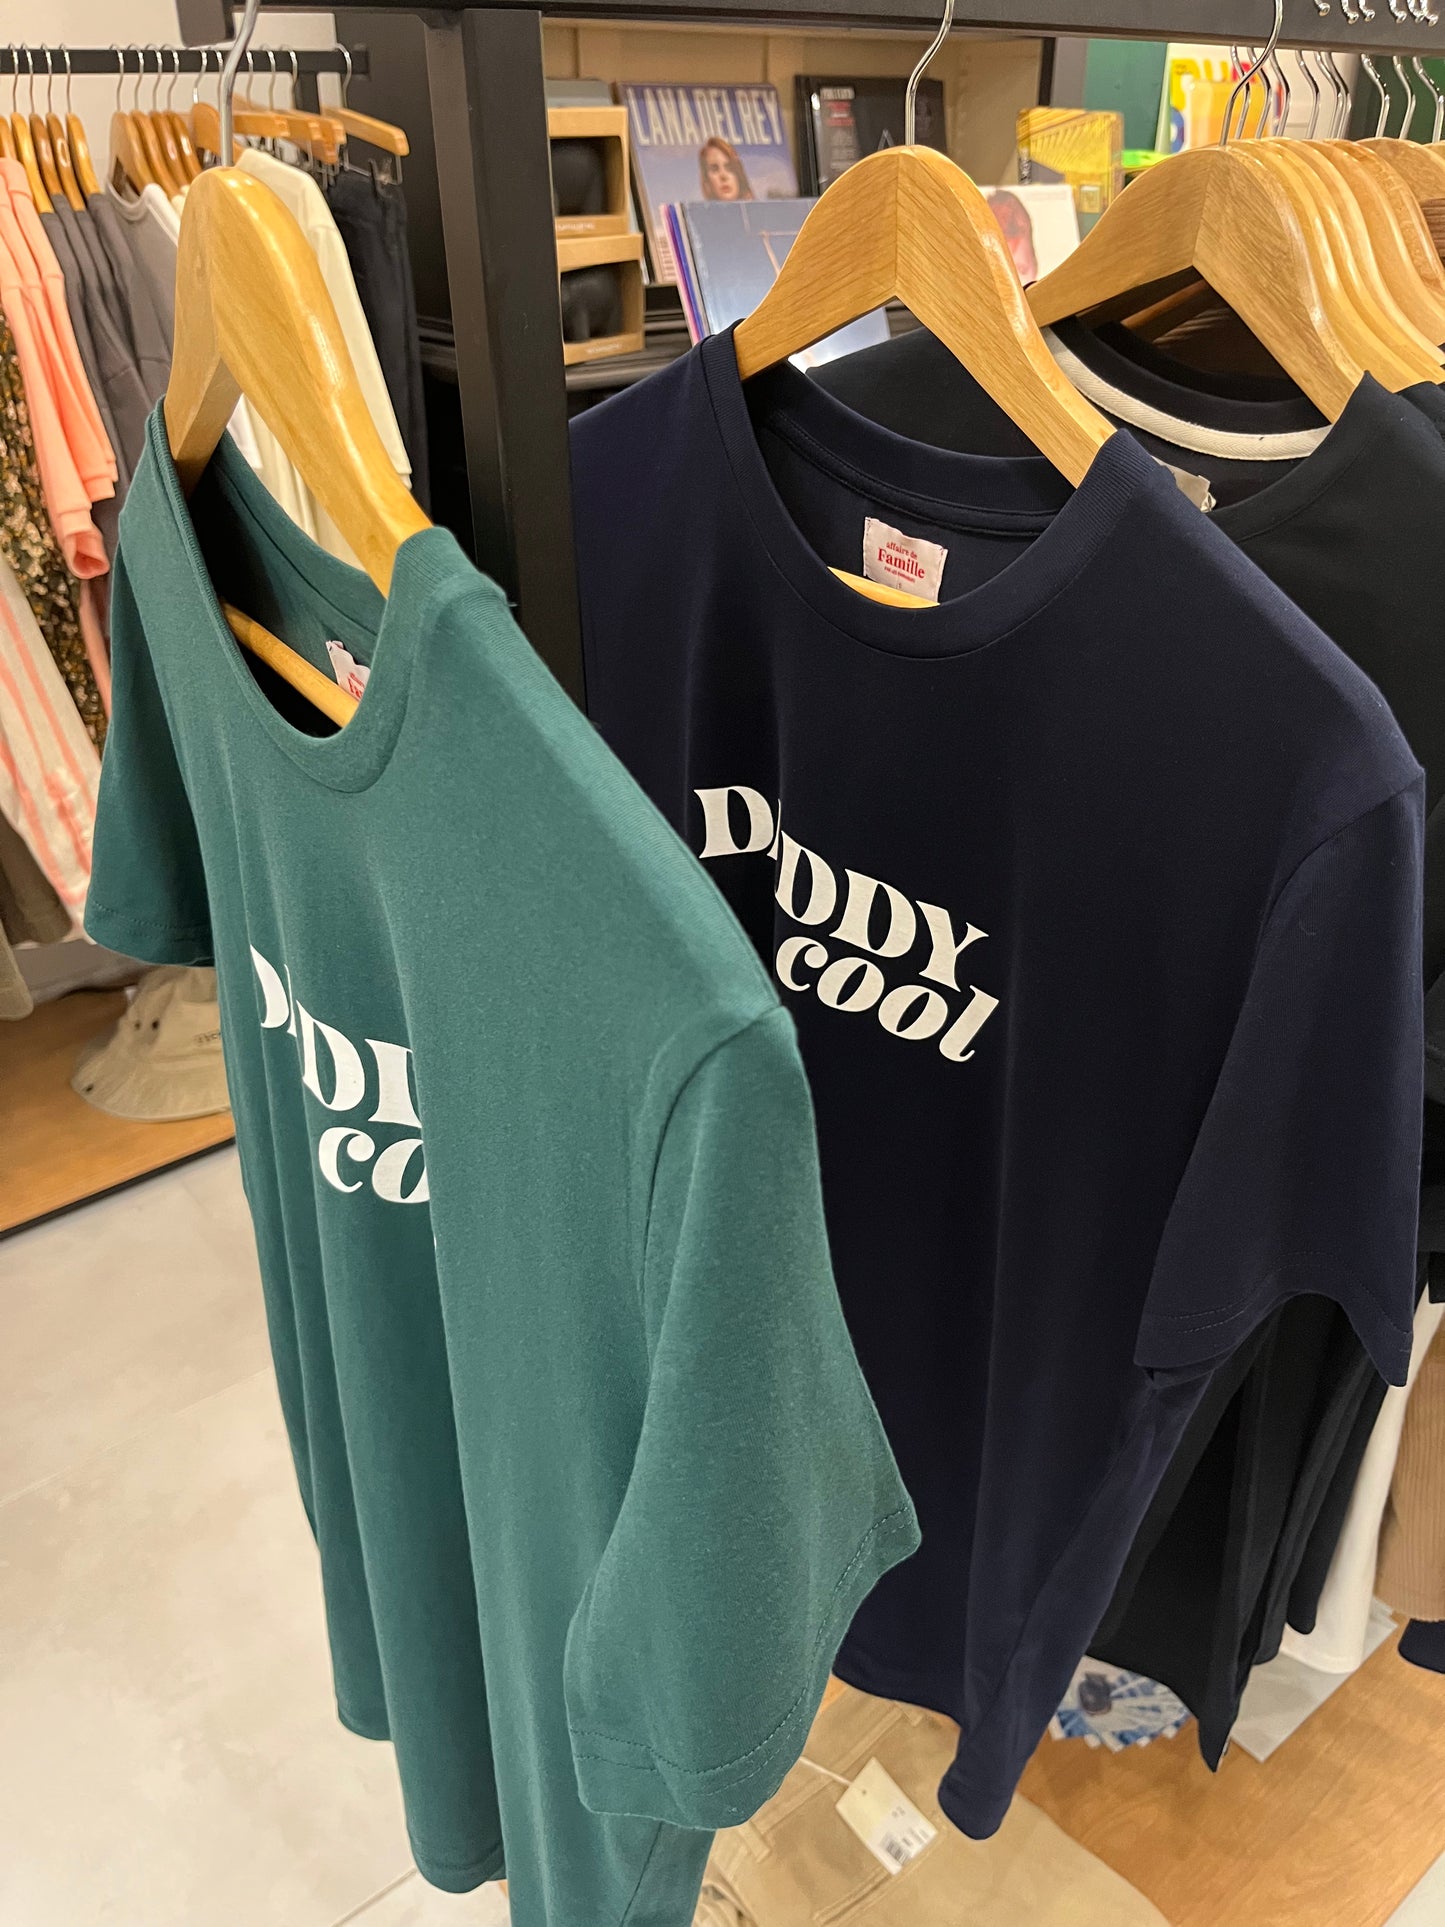 T-shirt "Daddy Cool" AFFAIRE DE FAMILLE